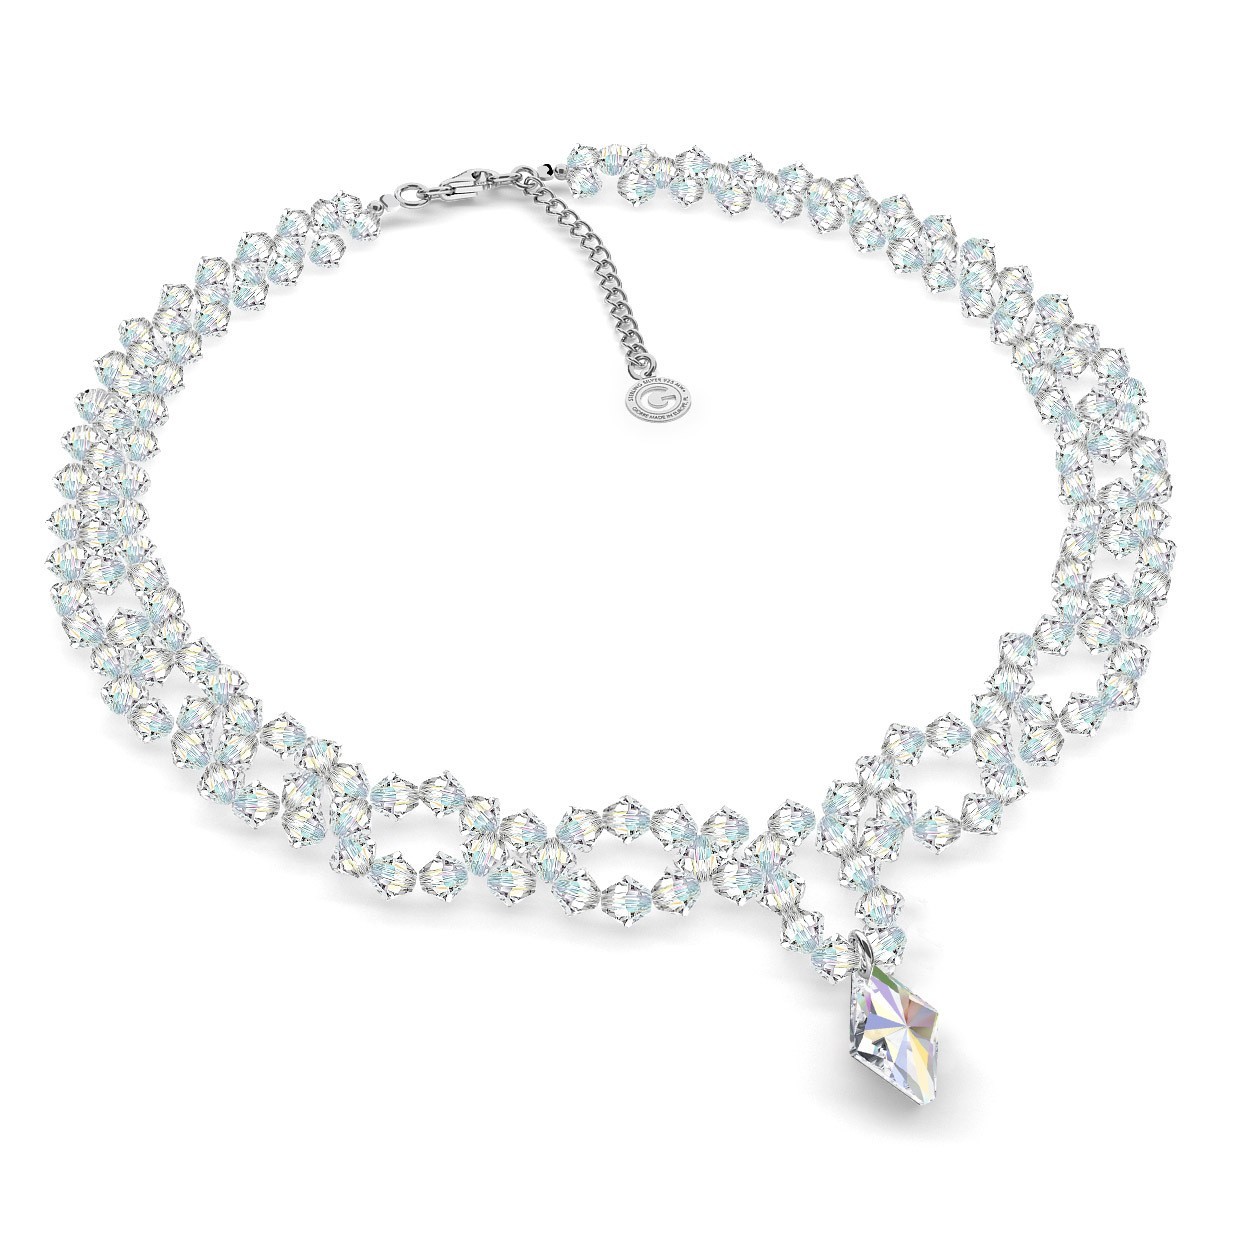 Halskette mit Swarovski Crystals, Hochzeitsschmuck - MODEL 2